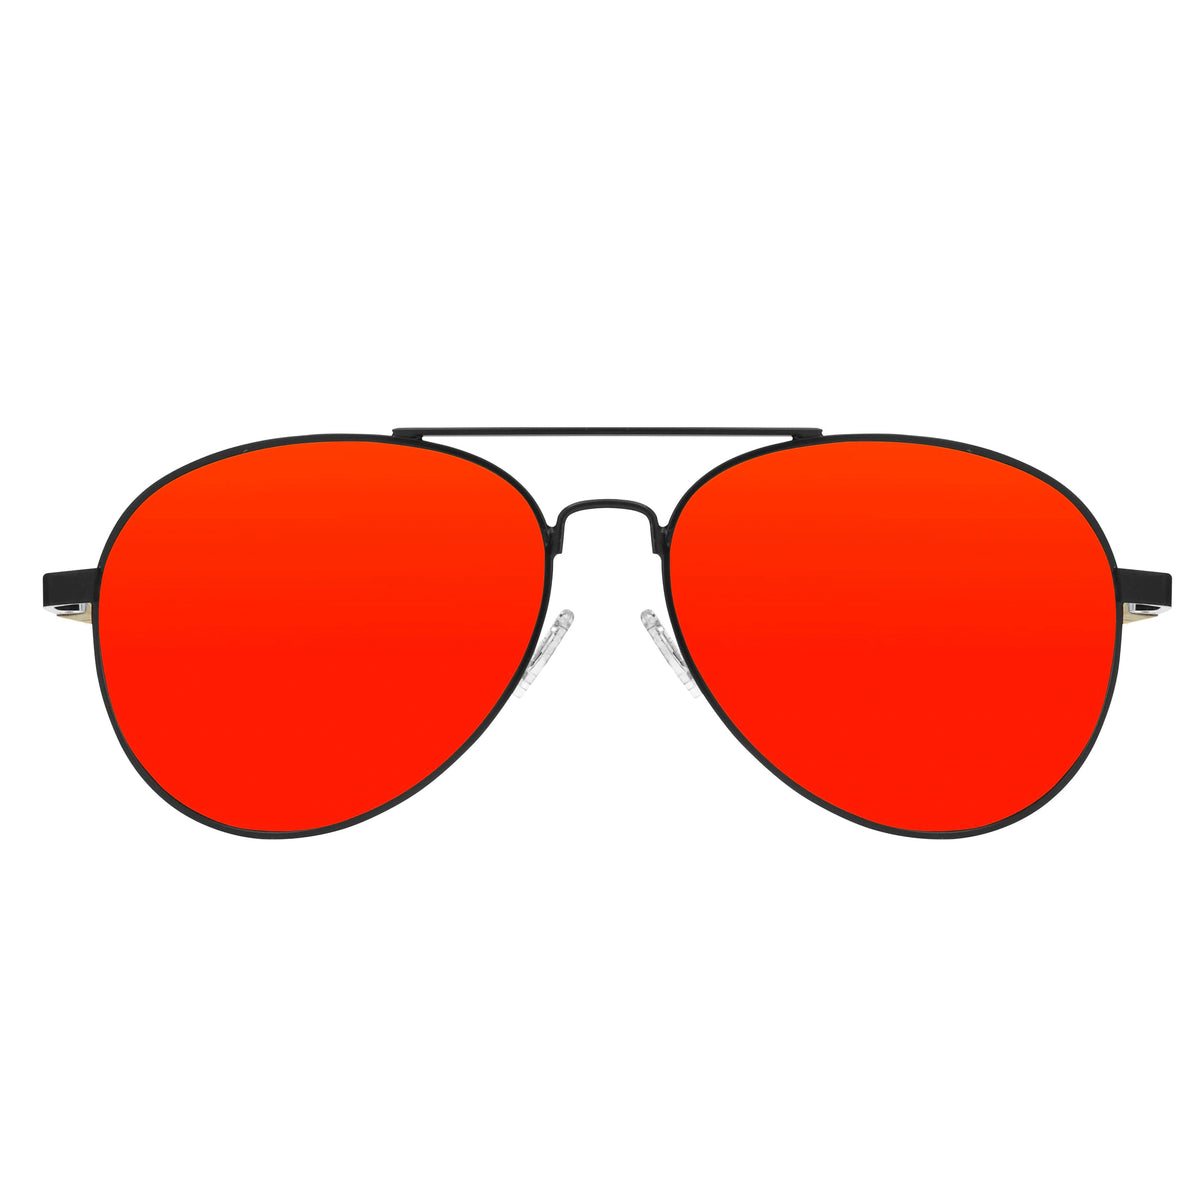 Gafas de ventisca - Hombre - Poc Iris Stripes Rojo - 40042 1101